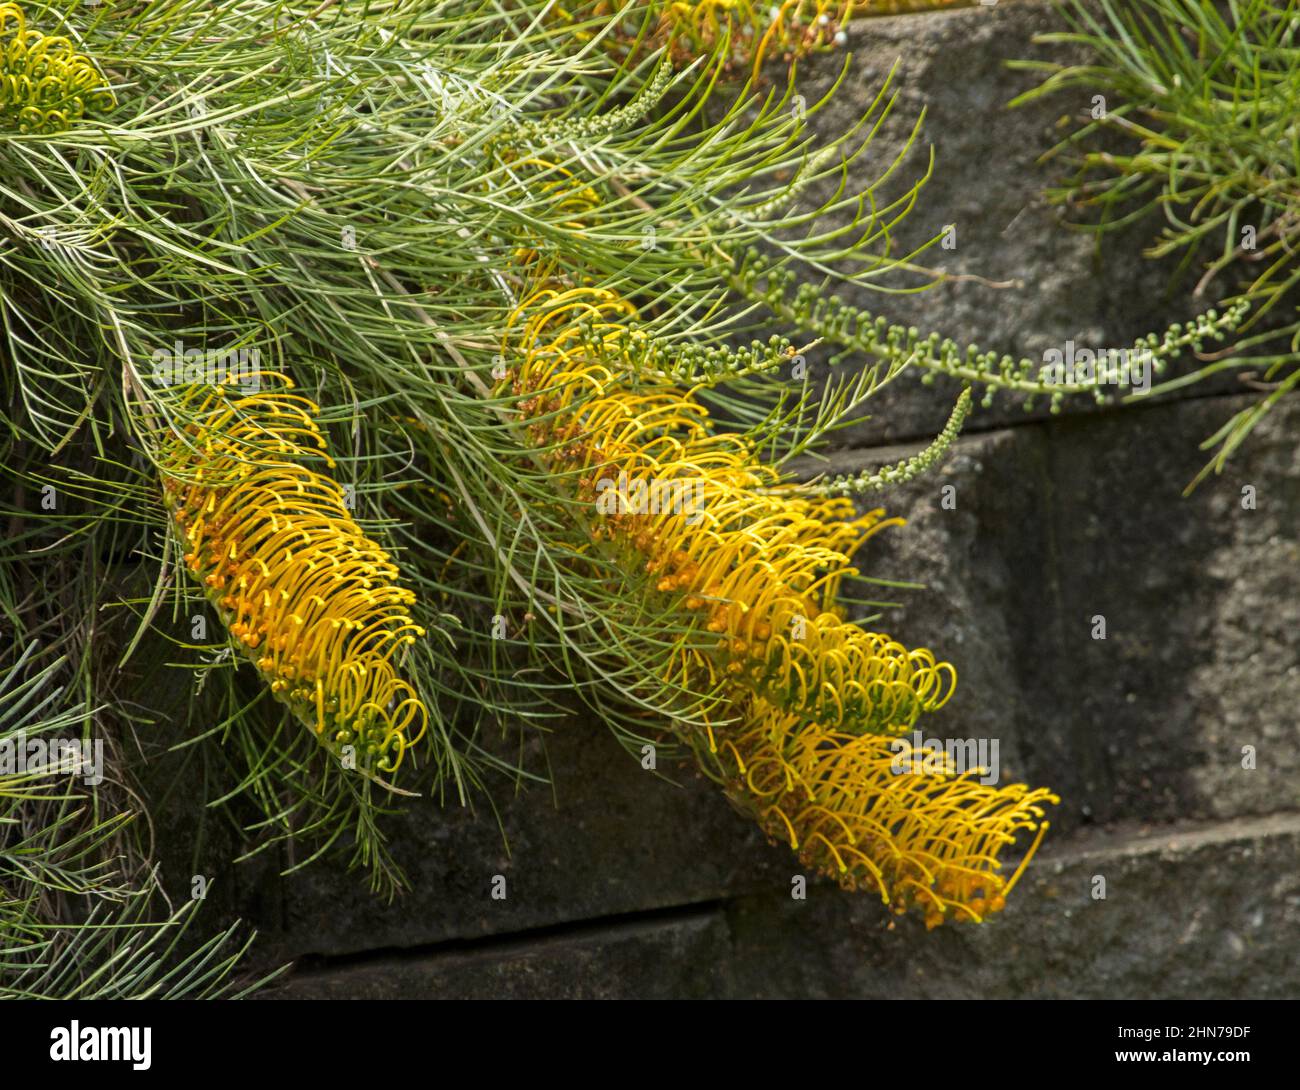 Große gelbe Blüten und grünes Laub des niederen Strauches, Grevillea 'Golden Lyre', eine australische einheimische Art Stockfoto